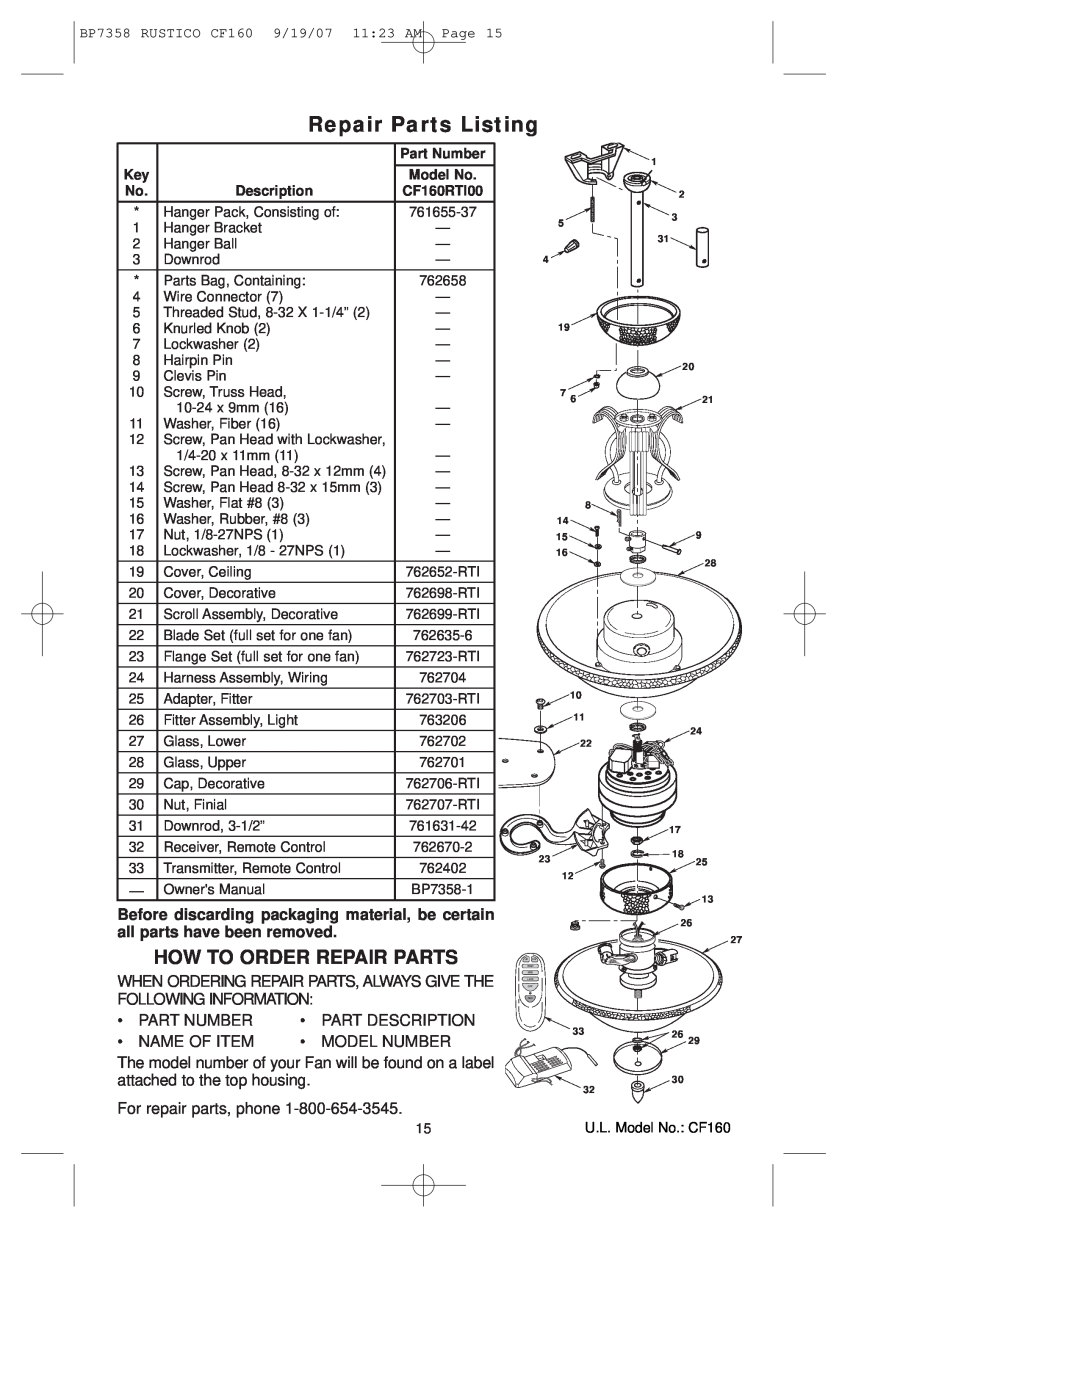 Emerson CF160 owner manual Repair Parts Listing, How To Order Repair Parts 